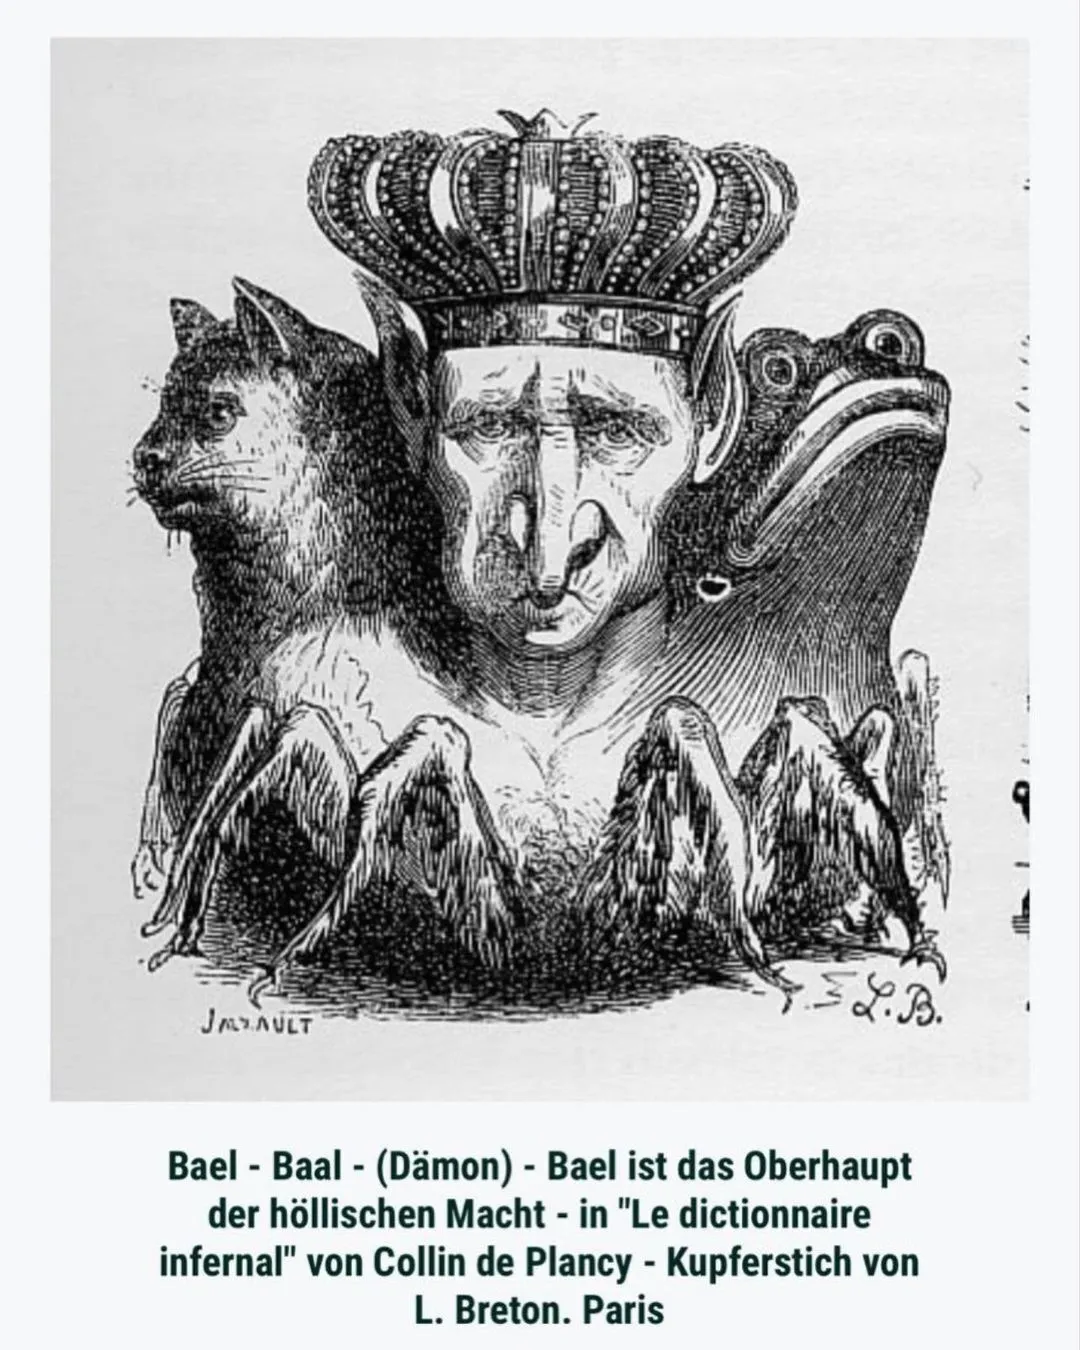 Изображение демона Баала, "Инфернальный словарь", книга по демонологии, XIX век